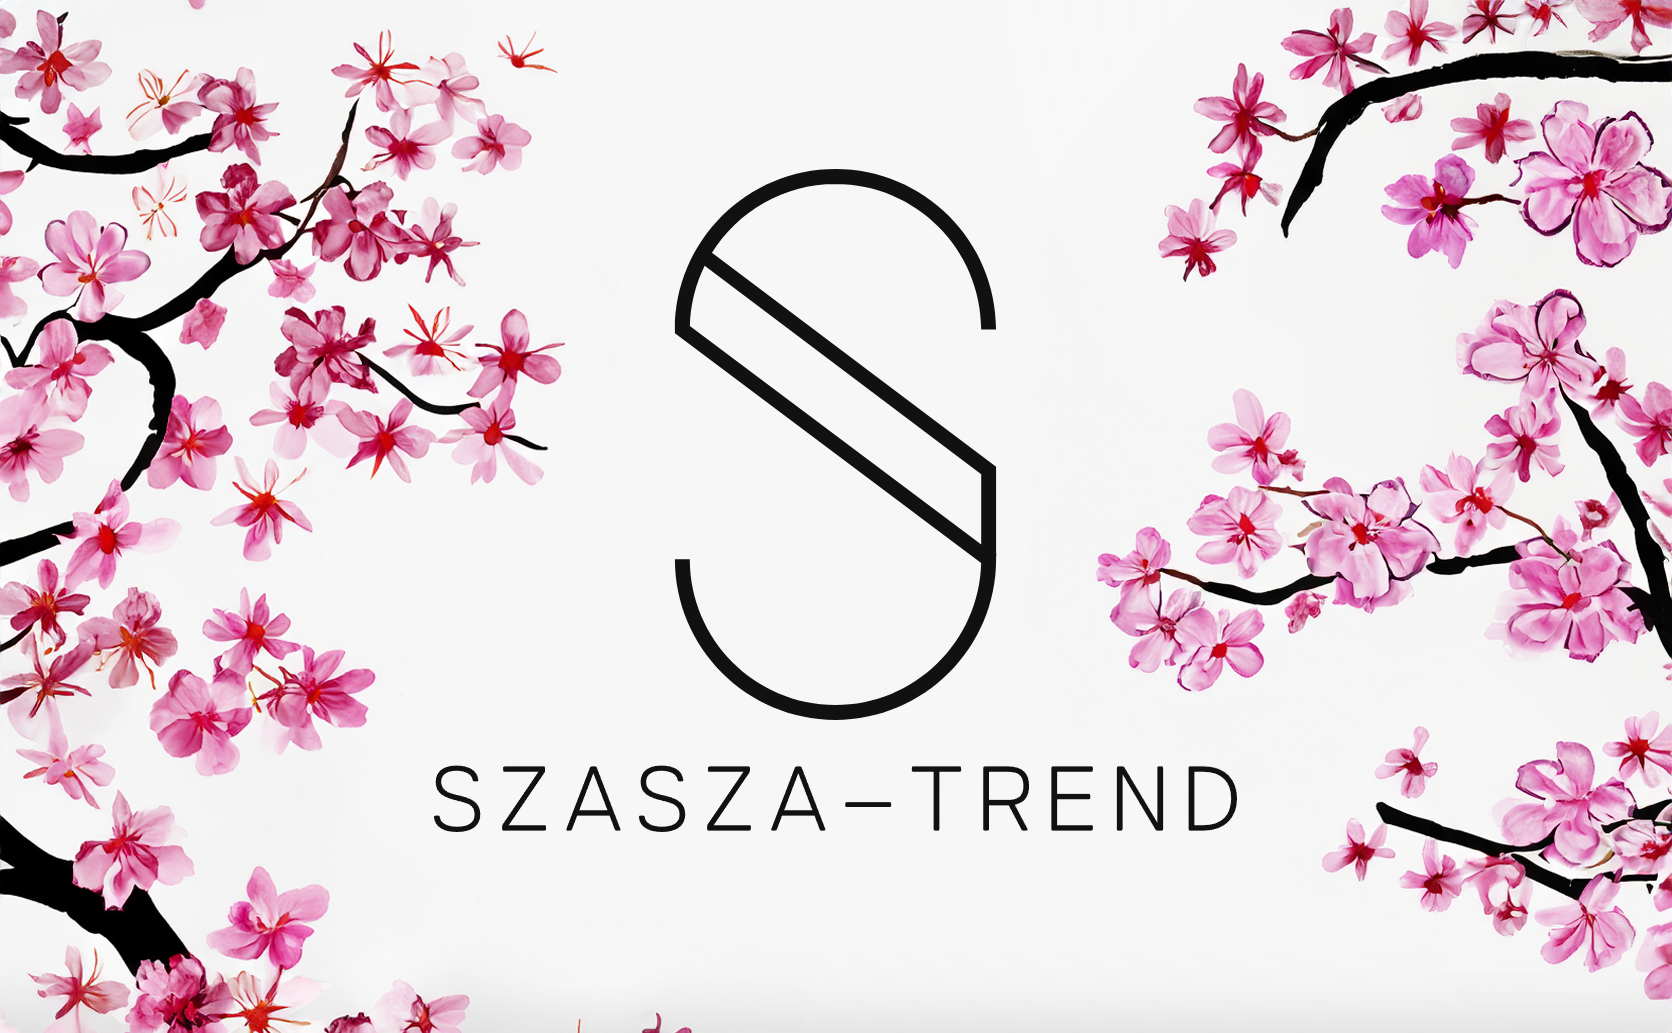 SzaSza-Trend